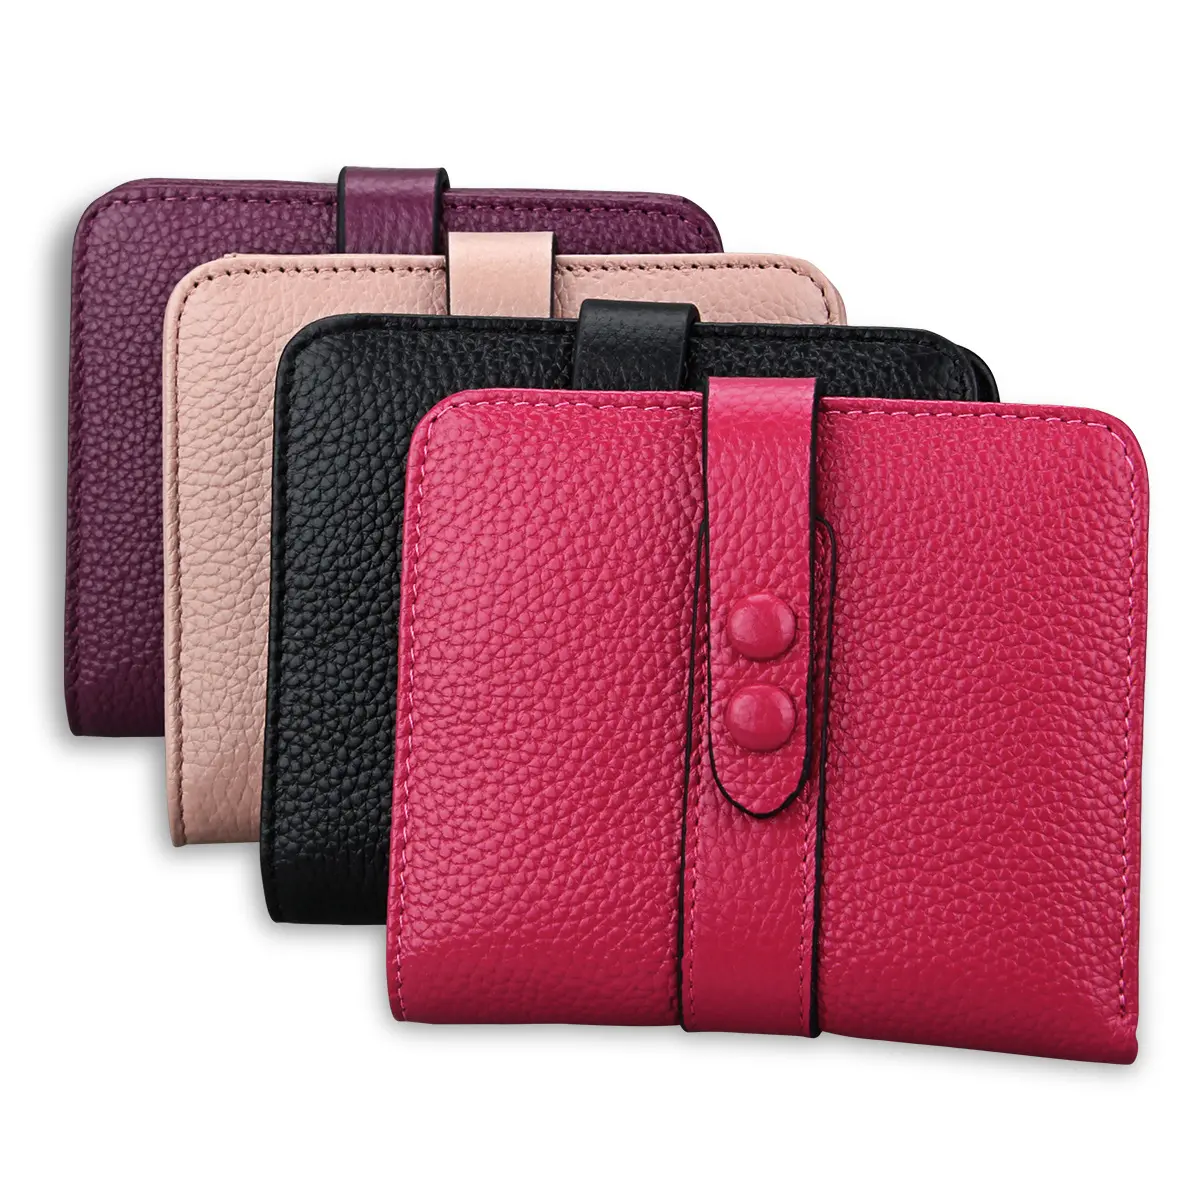 Üretici kadın çanta cüzdan anti-hırsızlık RFID kadın kart hakiki deri cüzdan özelleştirmek